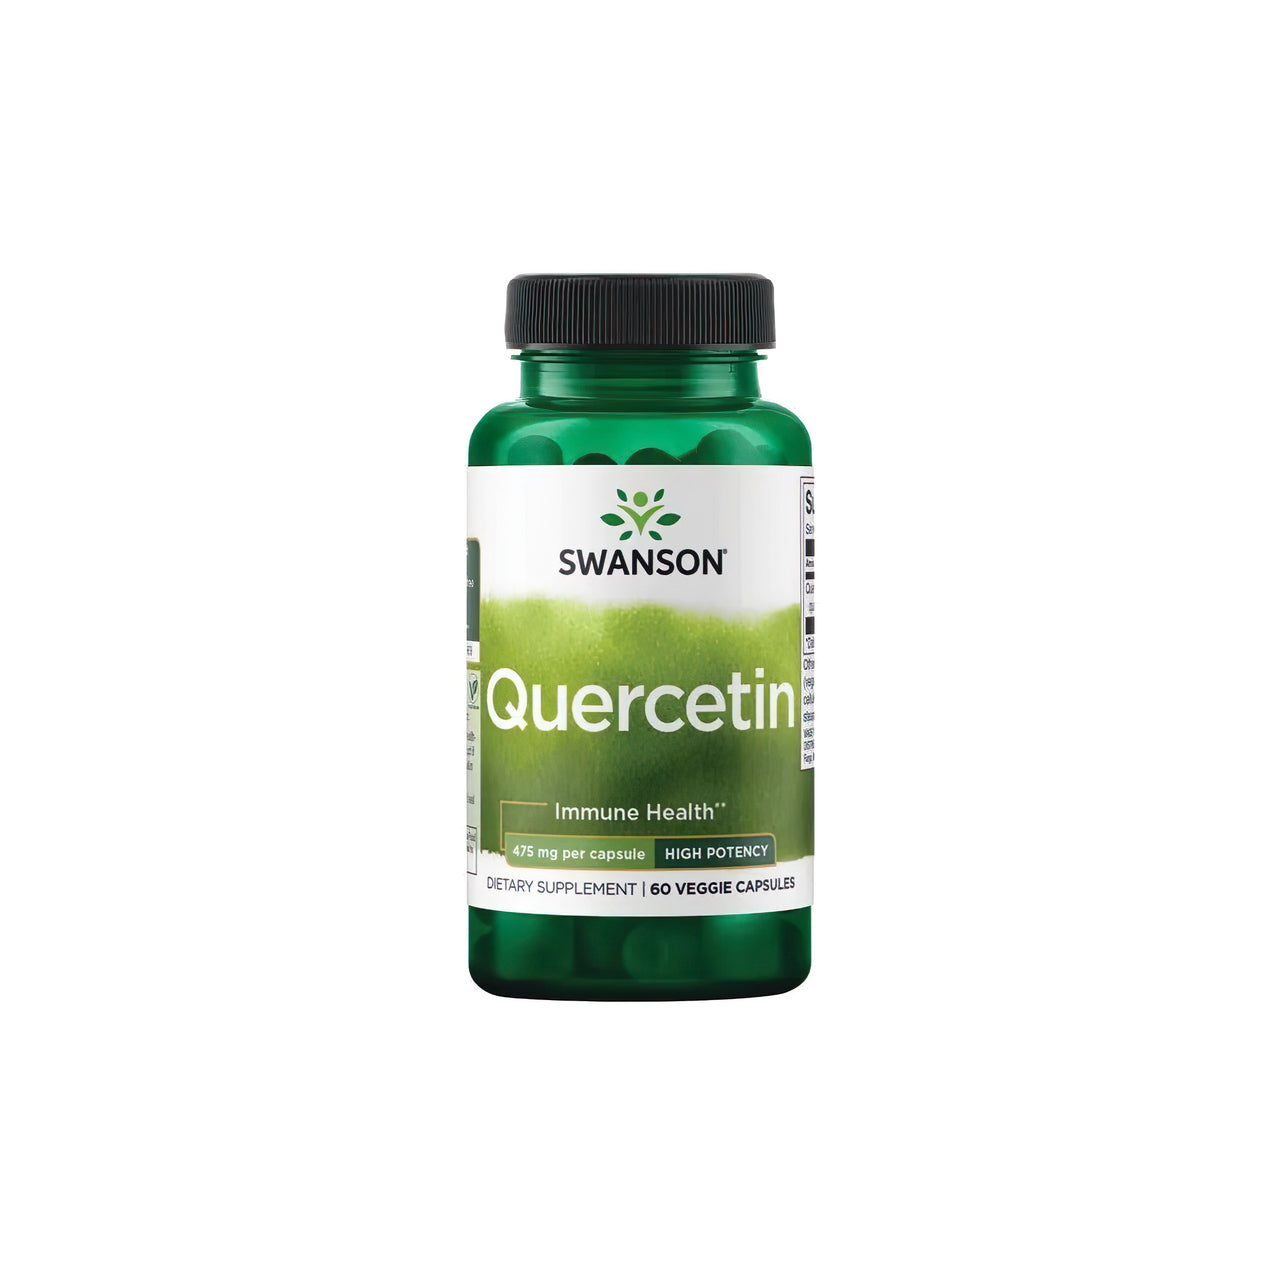 Un frasco de Swanson Quercetina 475 mg 60 vcaps, un potente antioxidante para el sistema inmunitario, sobre fondo blanco.